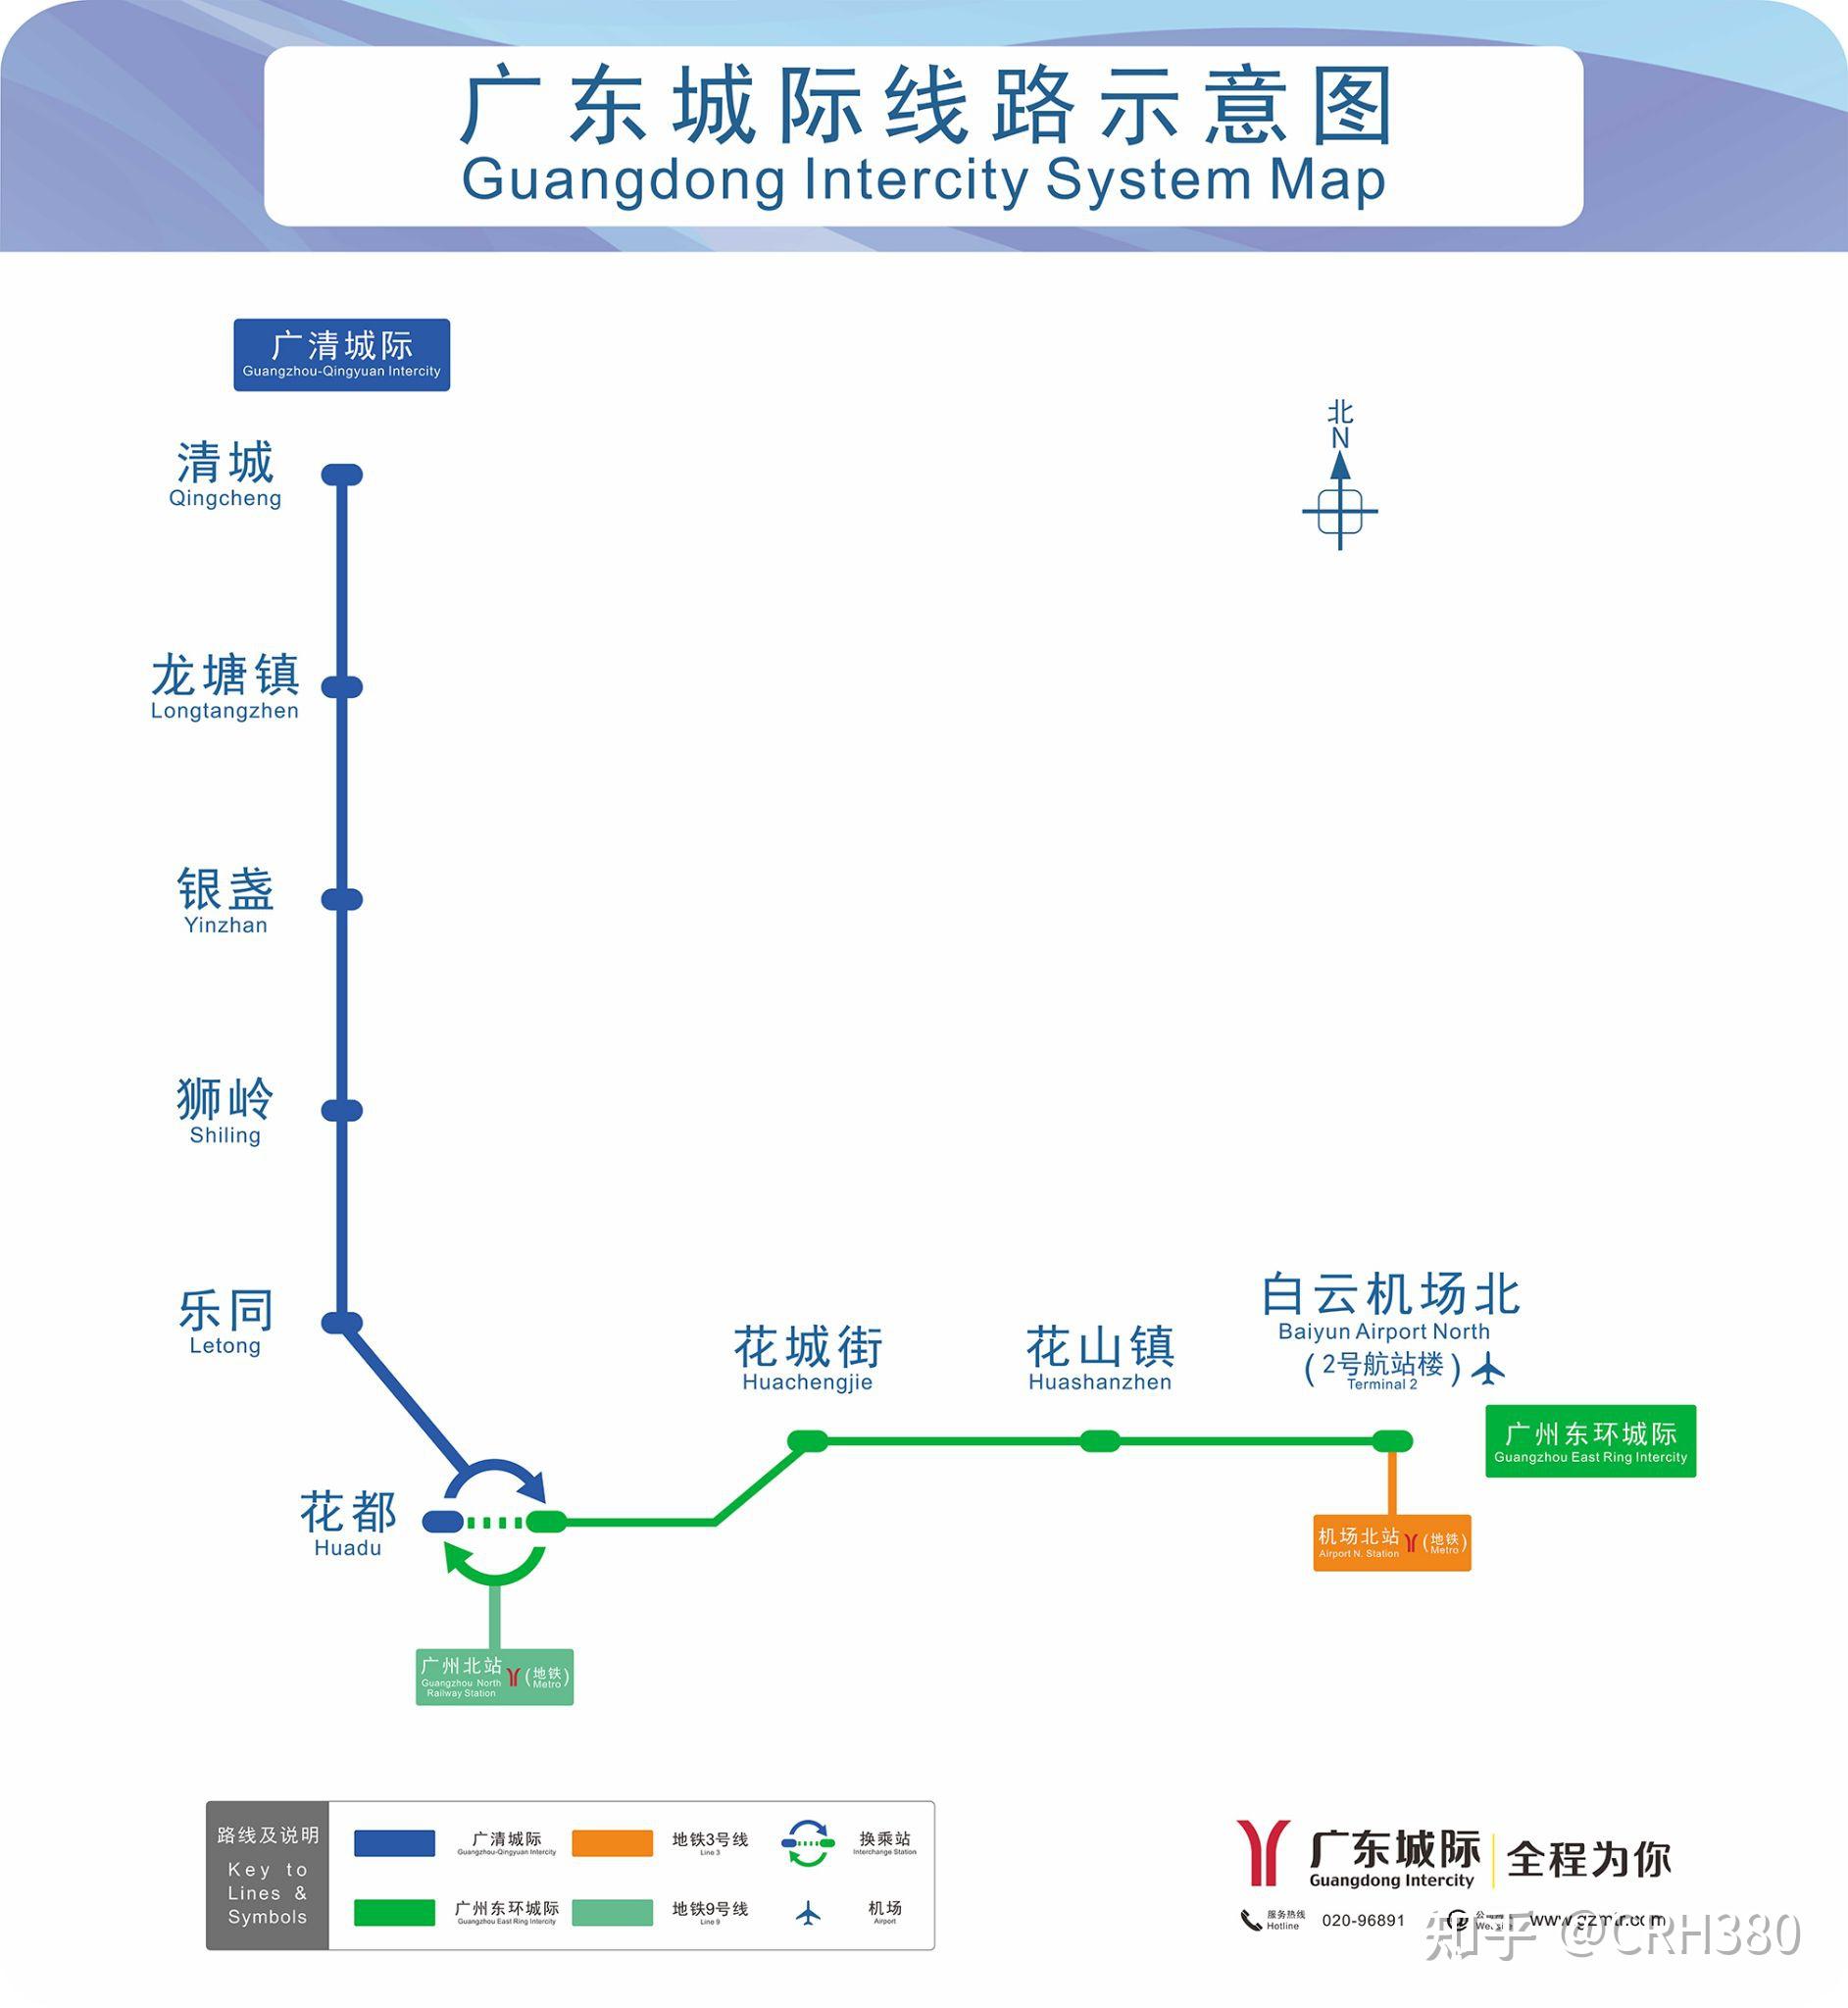 怎样用最短的时间由广州白云机场到广州南站呢? 